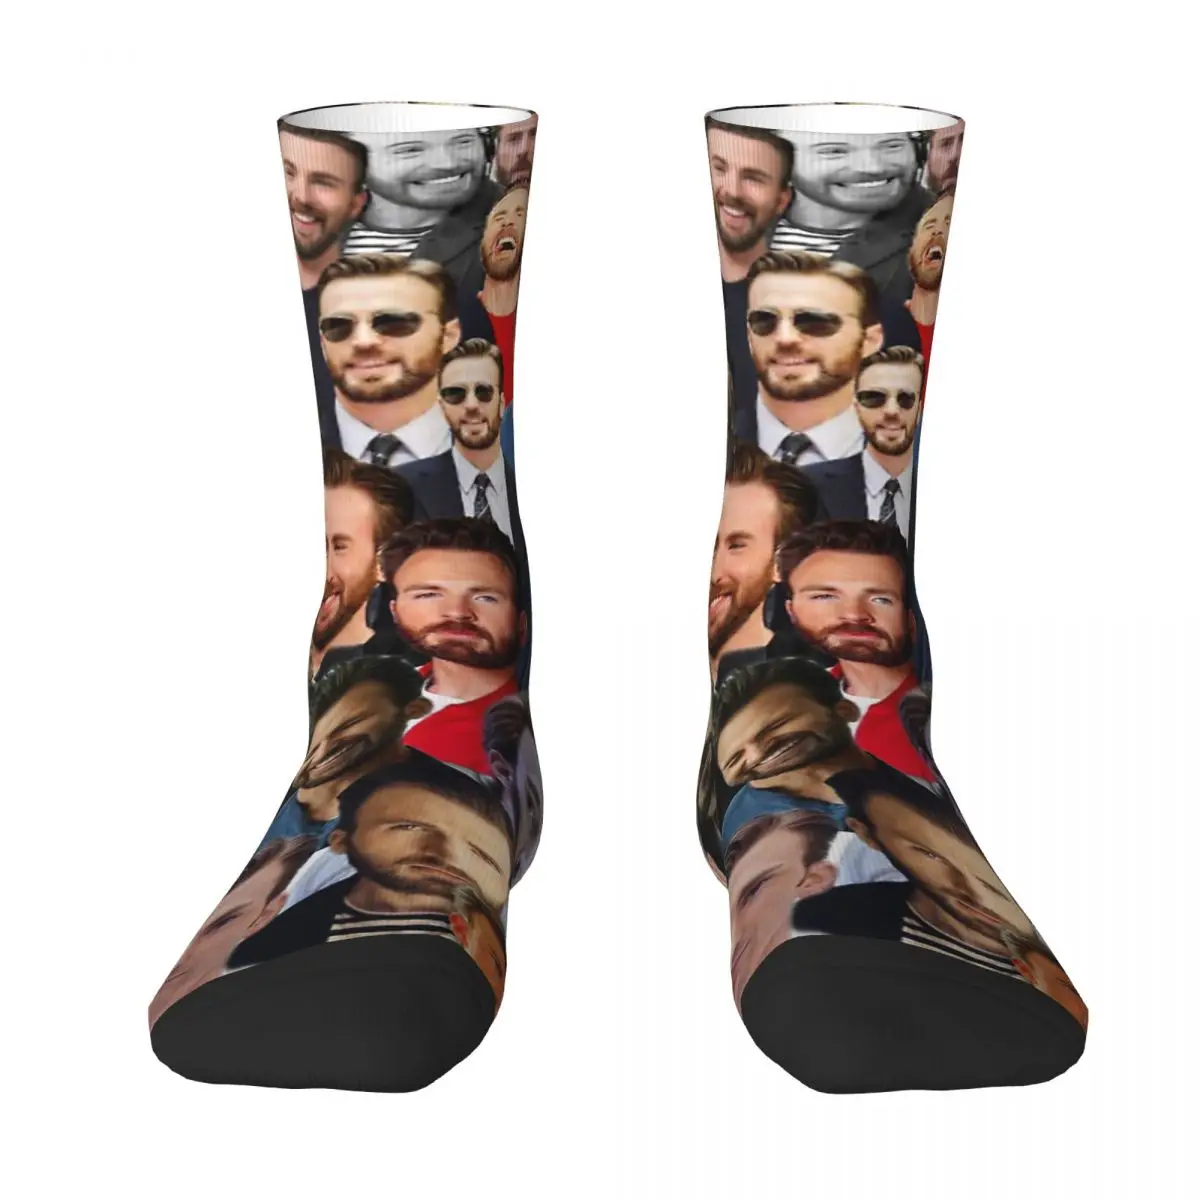 Chris Evans Adult Socks Unisex socks,men Socks women Socks chris thompson toys